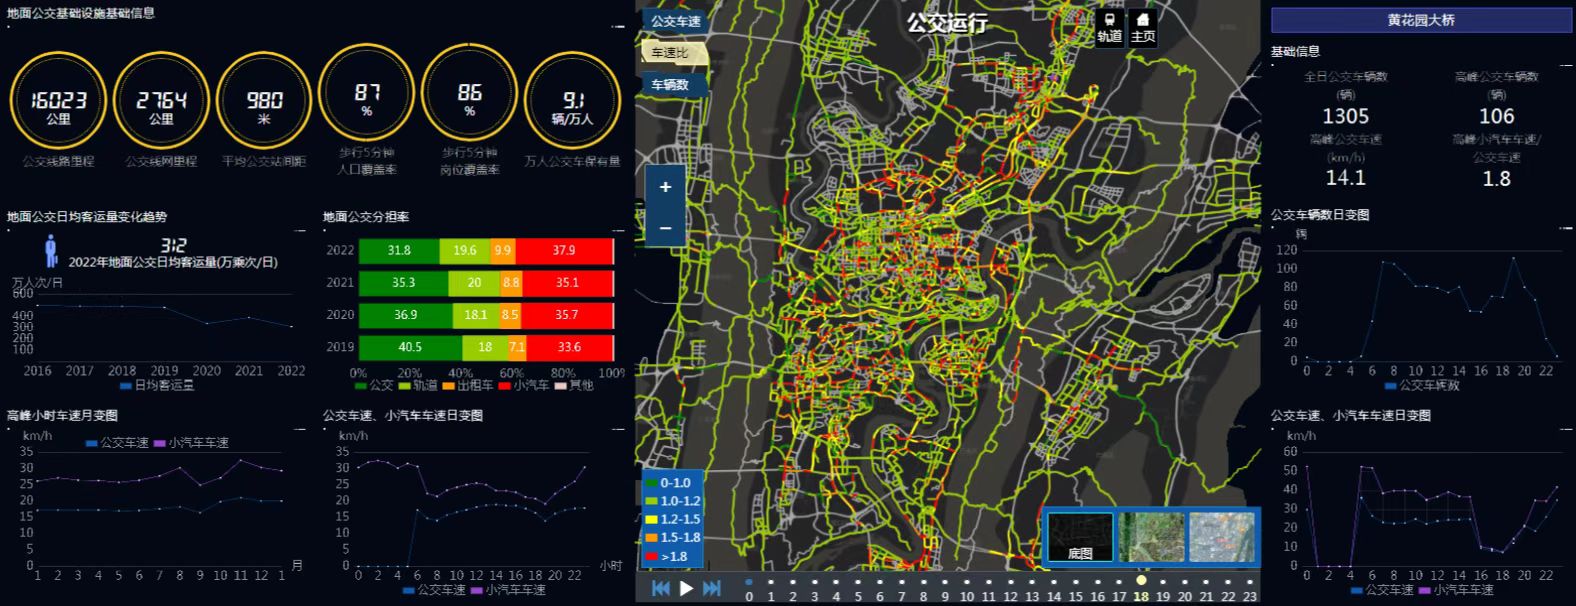 重庆市交通综合信息平台。